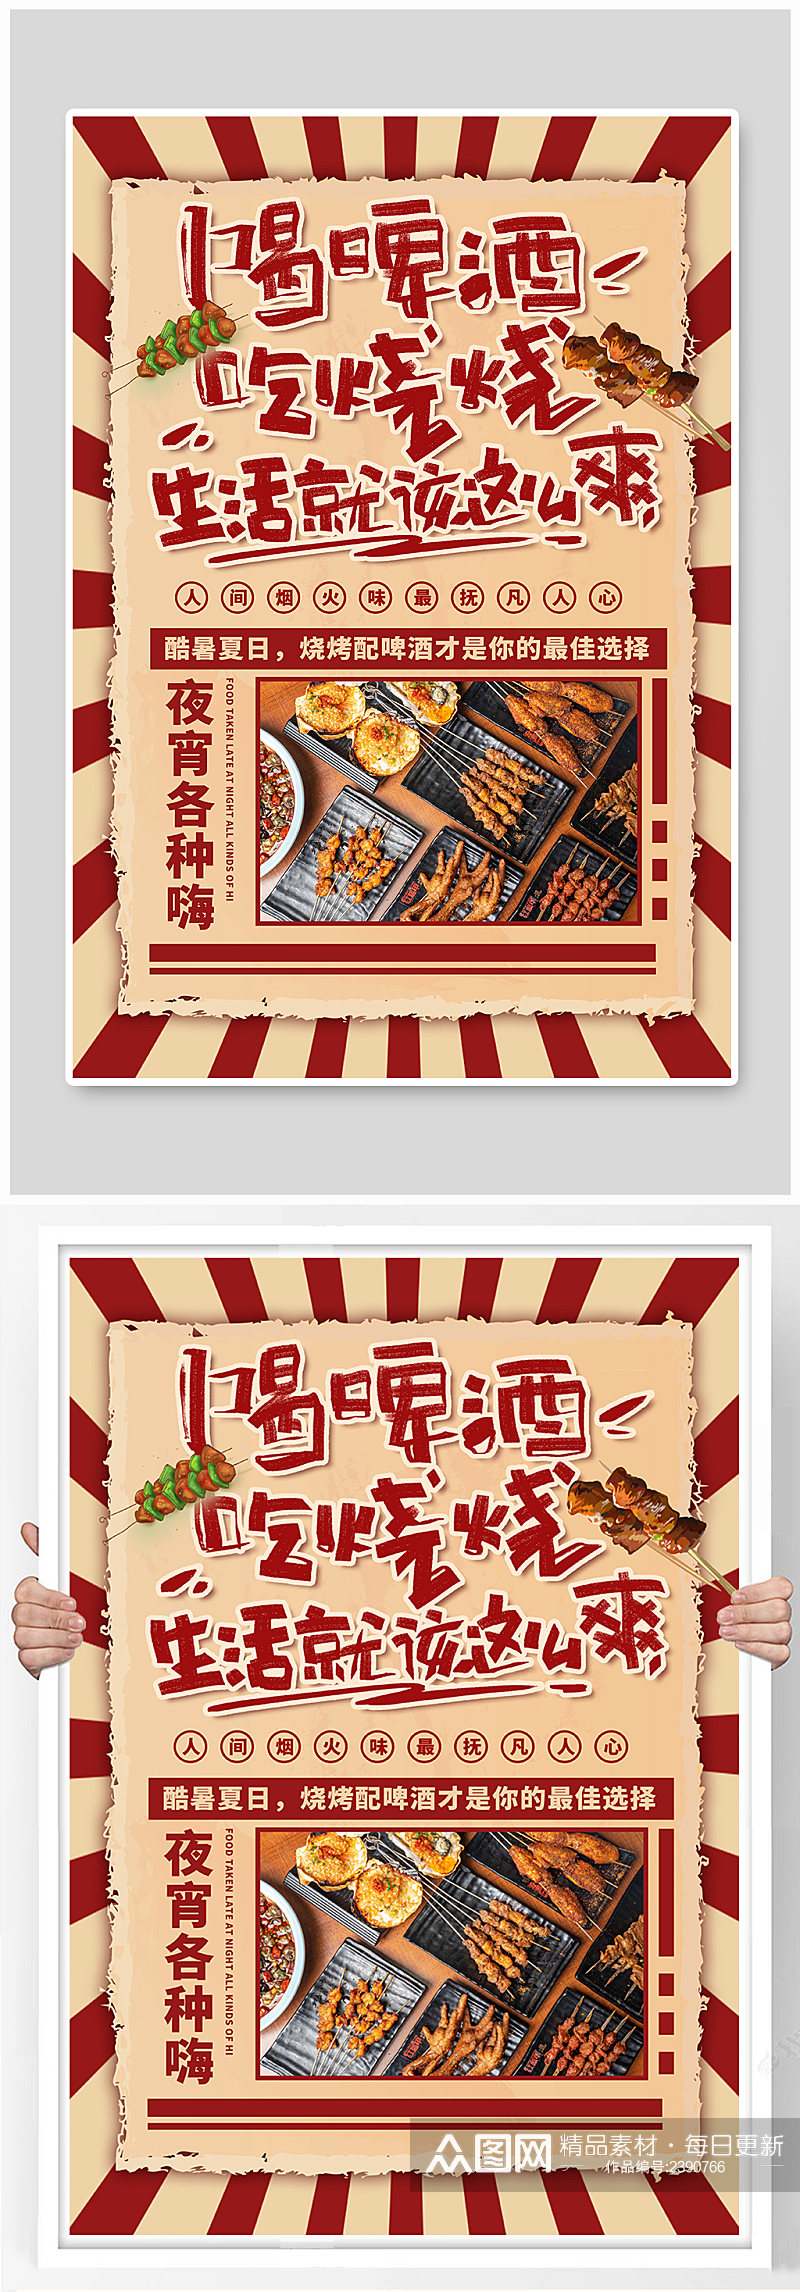 中国风夏季美食烧烤红色简约海报素材